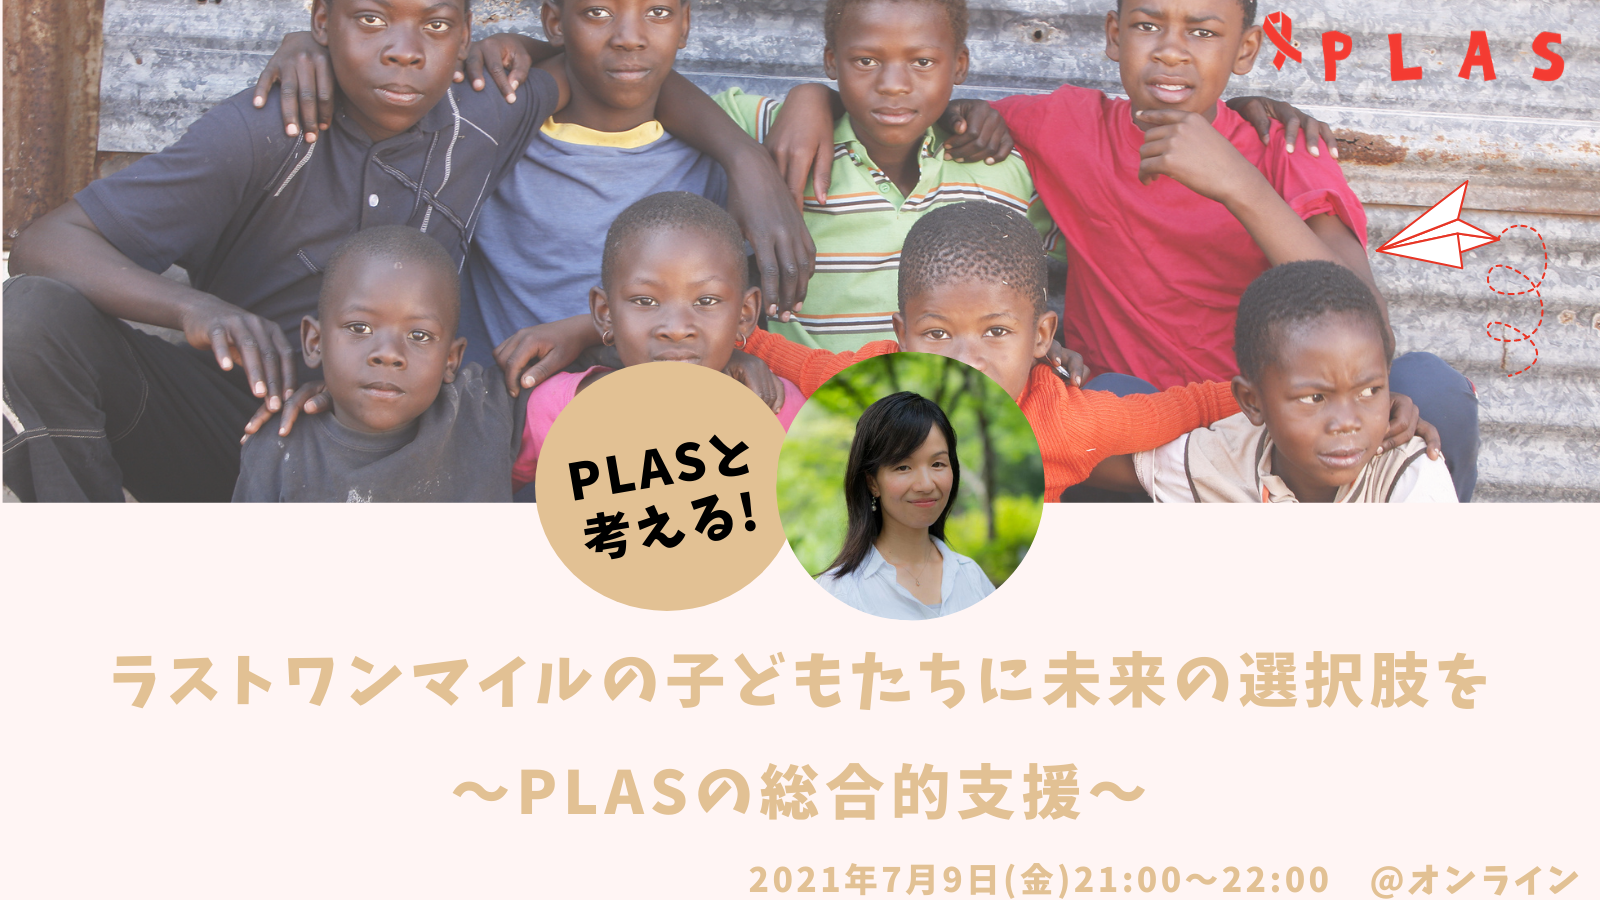 終了 7 9 金 Plasチャンネル ラストワンマイルの子どもたちに未来の選択肢を Plasの総合的支援 Plas プラス アフリカの 子どもを支える国際協力ngo